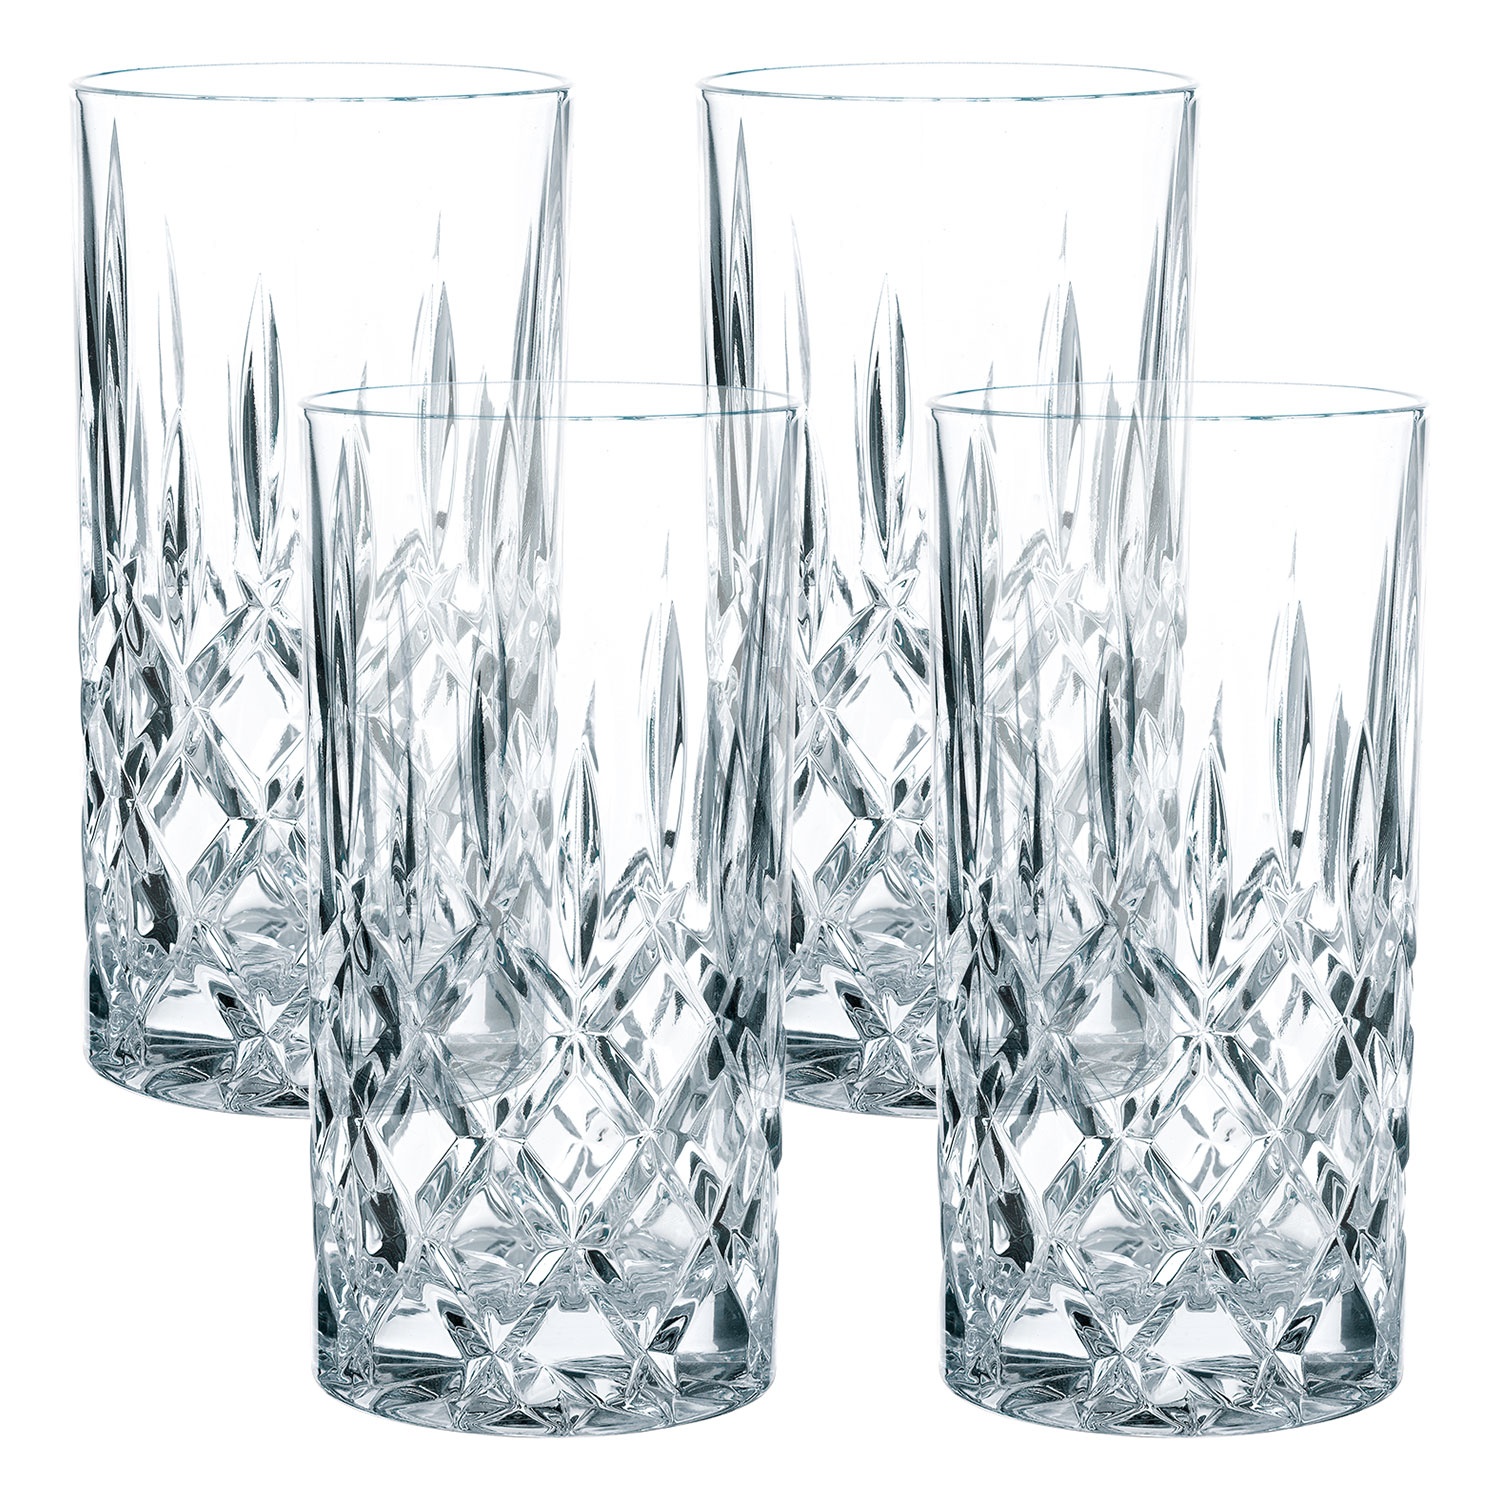 SPIEGELAU Gin- & Tonic-Gläser, Longdrinkgläser oder Becher, 4er-Set